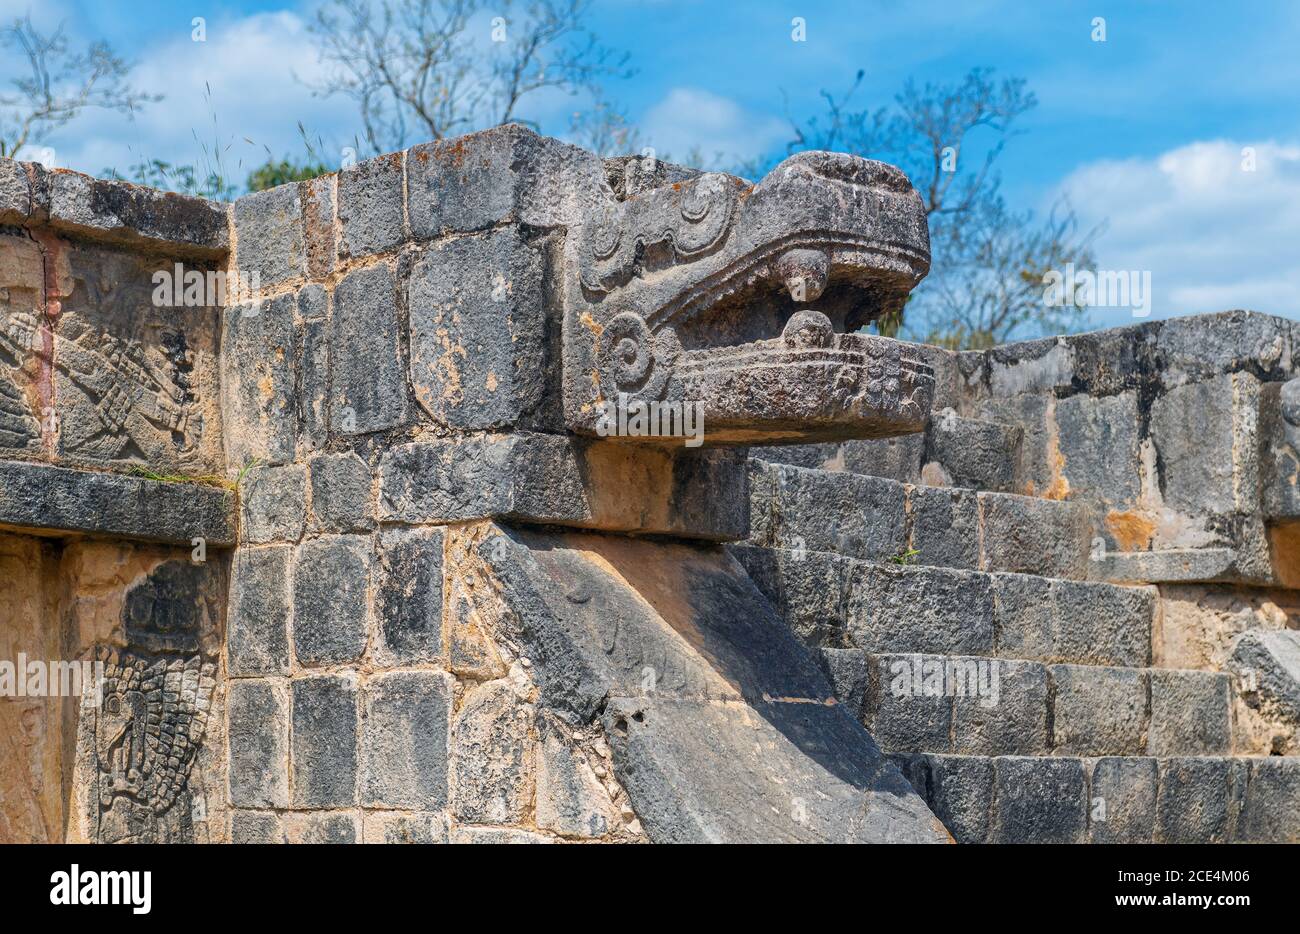 Steinskulptur der gefiederten Schlange und des gottes Quetzalcoatl, Gottheit der Schöpfung und des Lebens für die Azteken- und Maya-Zivilisation, Chichen Itza, Mexiko. Stockfoto